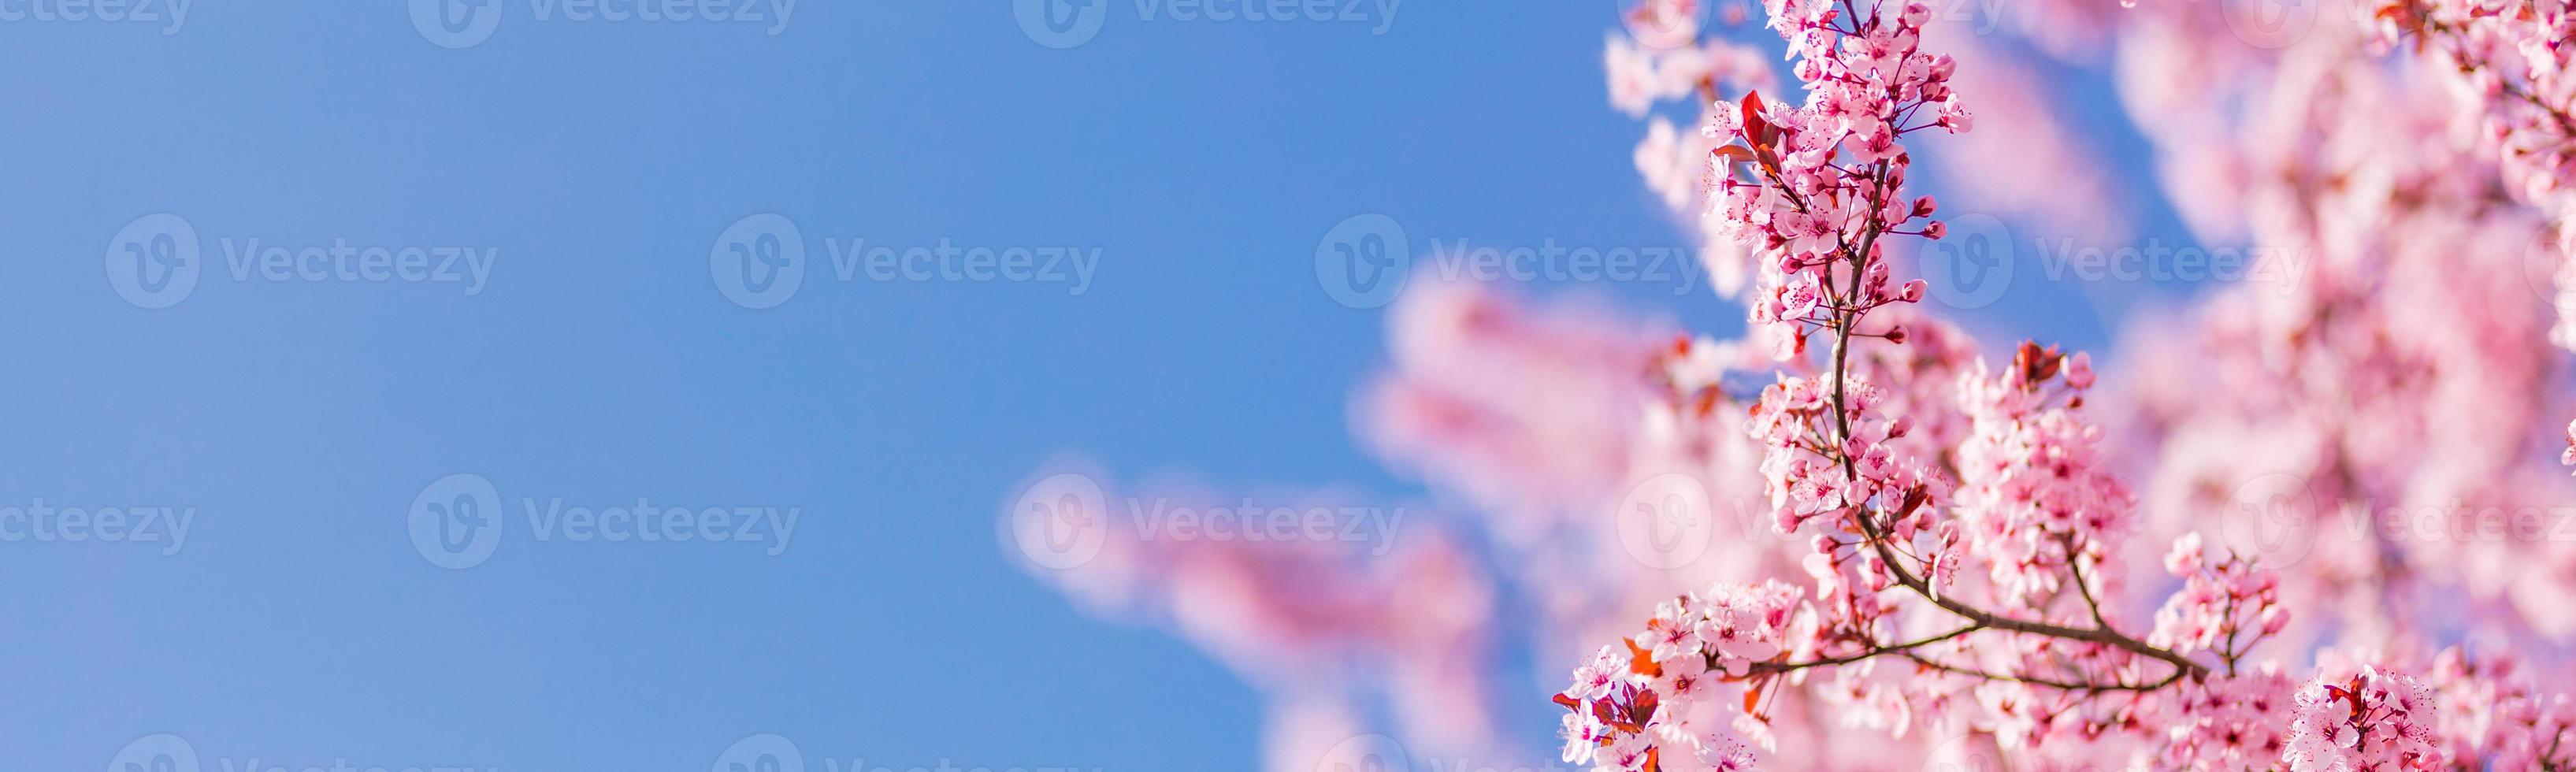 frühlingsgrenze oder hintergrundkunst mit rosa blüte. schöne naturszene mit blühendem baum und sonnenaufflackern. sonniger tag, wunderbare frühlingsfahnenschablone foto